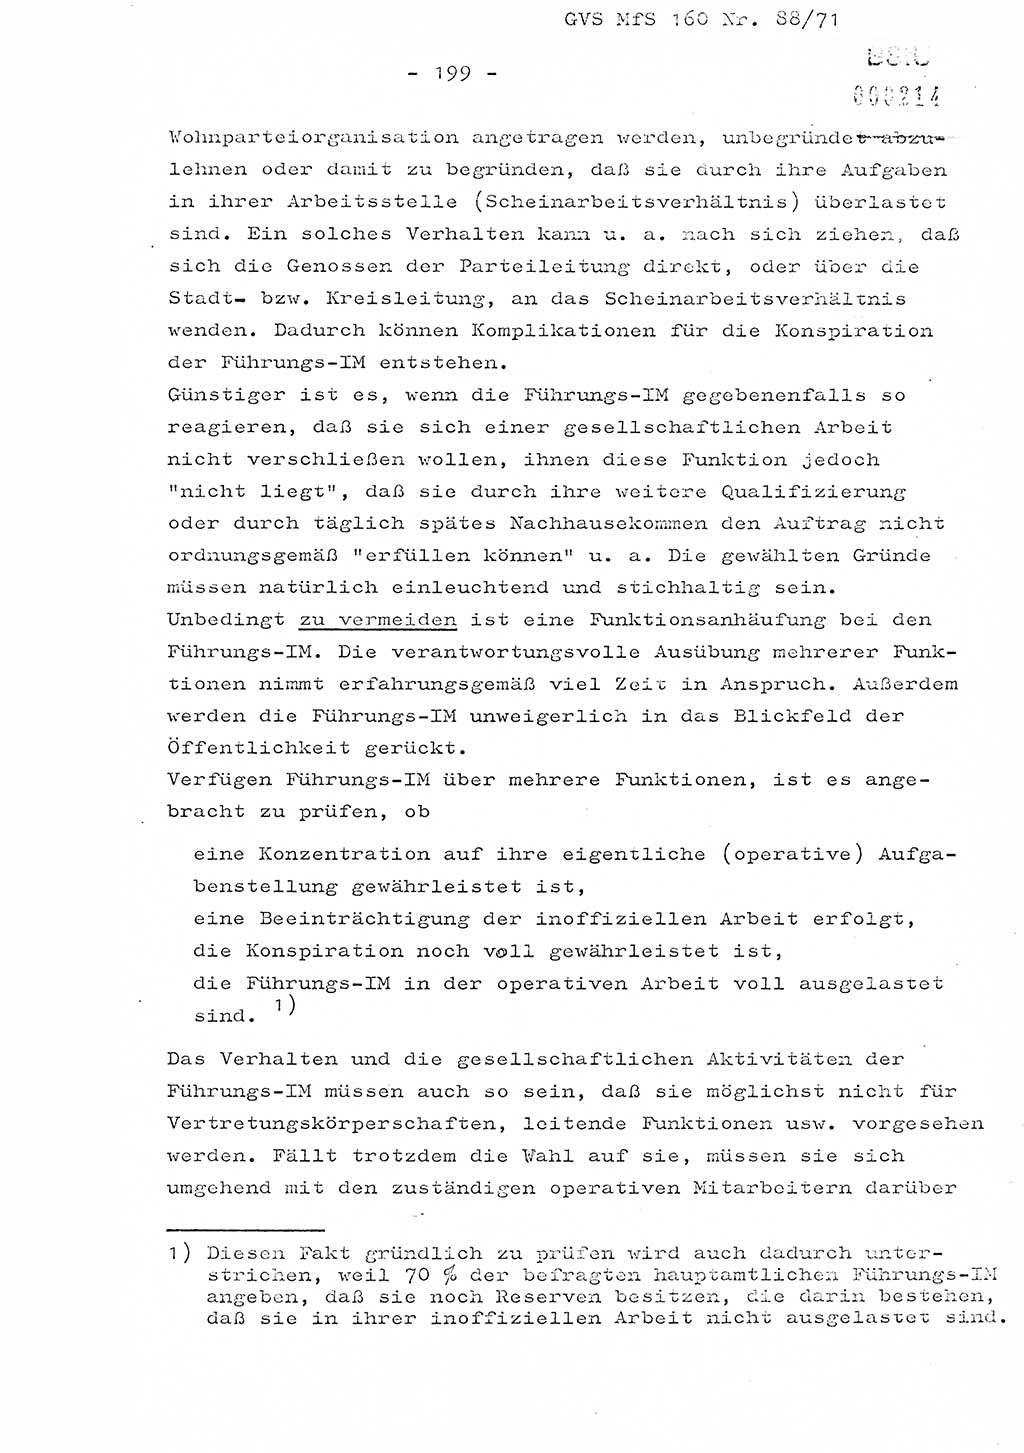 Dissertation Oberstleutnant Josef Schwarz (BV Schwerin), Major Fritz Amm (JHS), Hauptmann Peter Gräßler (JHS), Ministerium für Staatssicherheit (MfS) [Deutsche Demokratische Republik (DDR)], Juristische Hochschule (JHS), Geheime Verschlußsache (GVS) 160-88/71, Potsdam 1972, Seite 199 (Diss. MfS DDR JHS GVS 160-88/71 1972, S. 199)